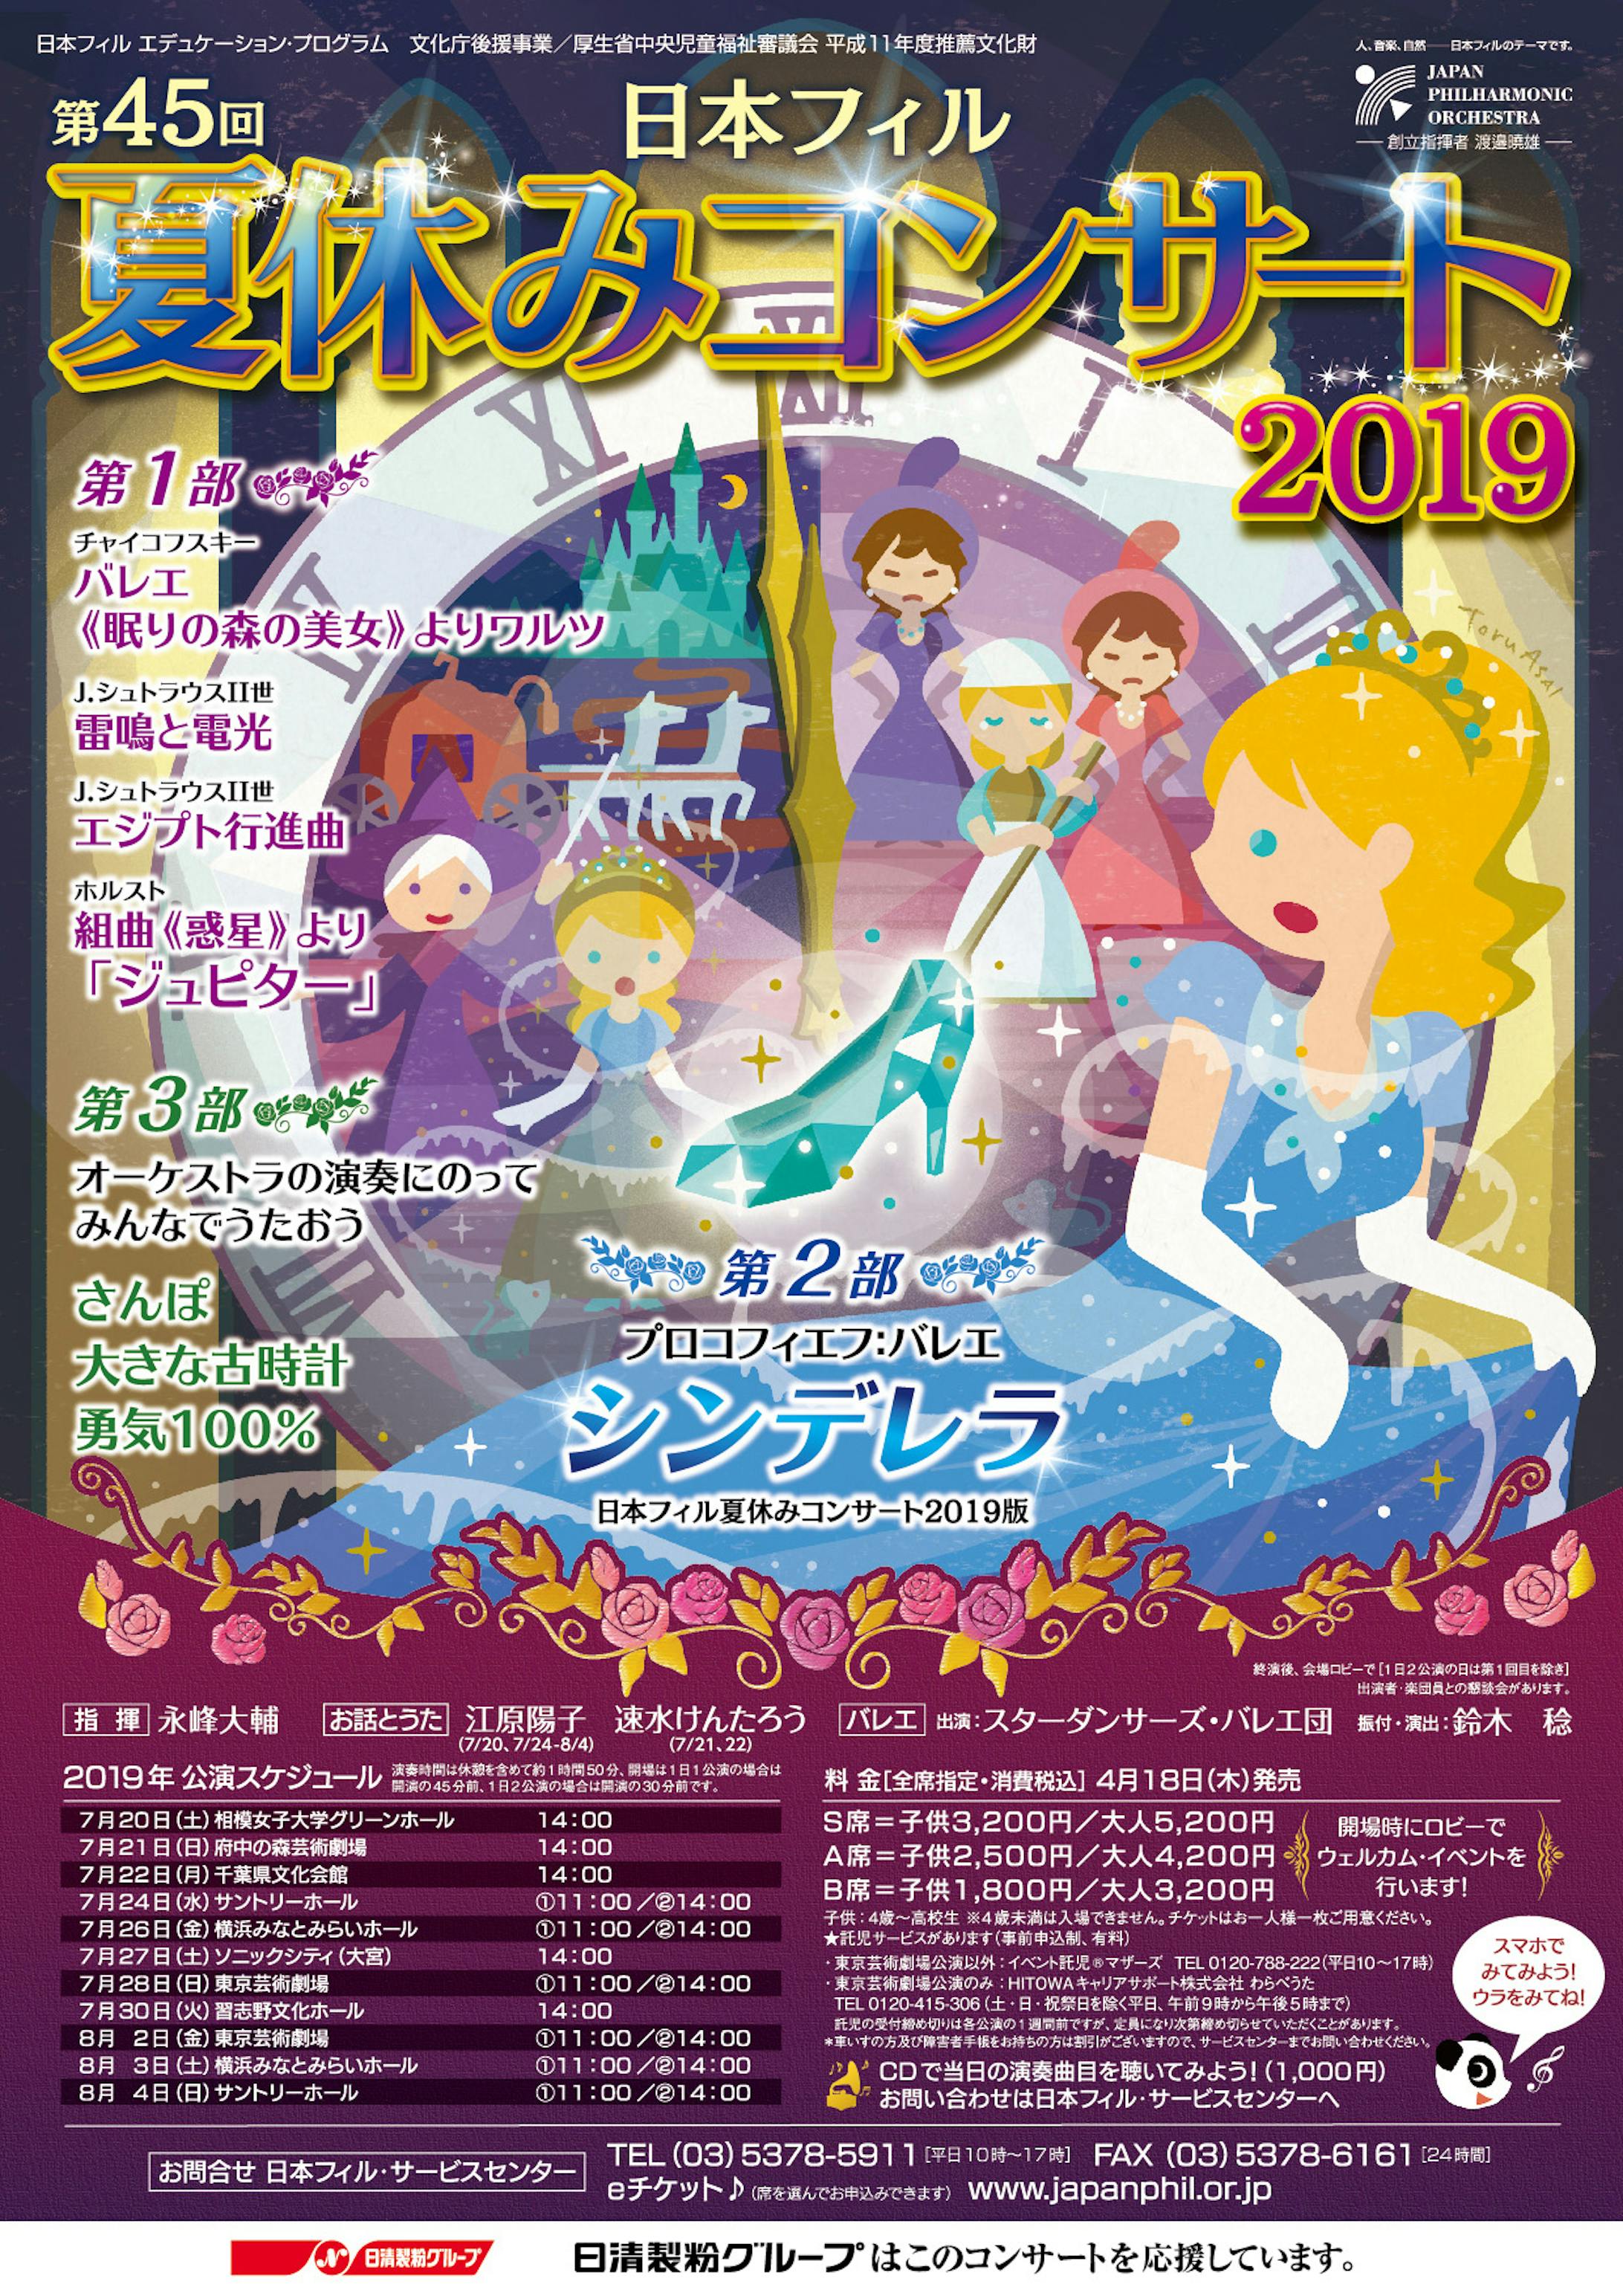 日本フィル 夏休みコンサート 2019-1